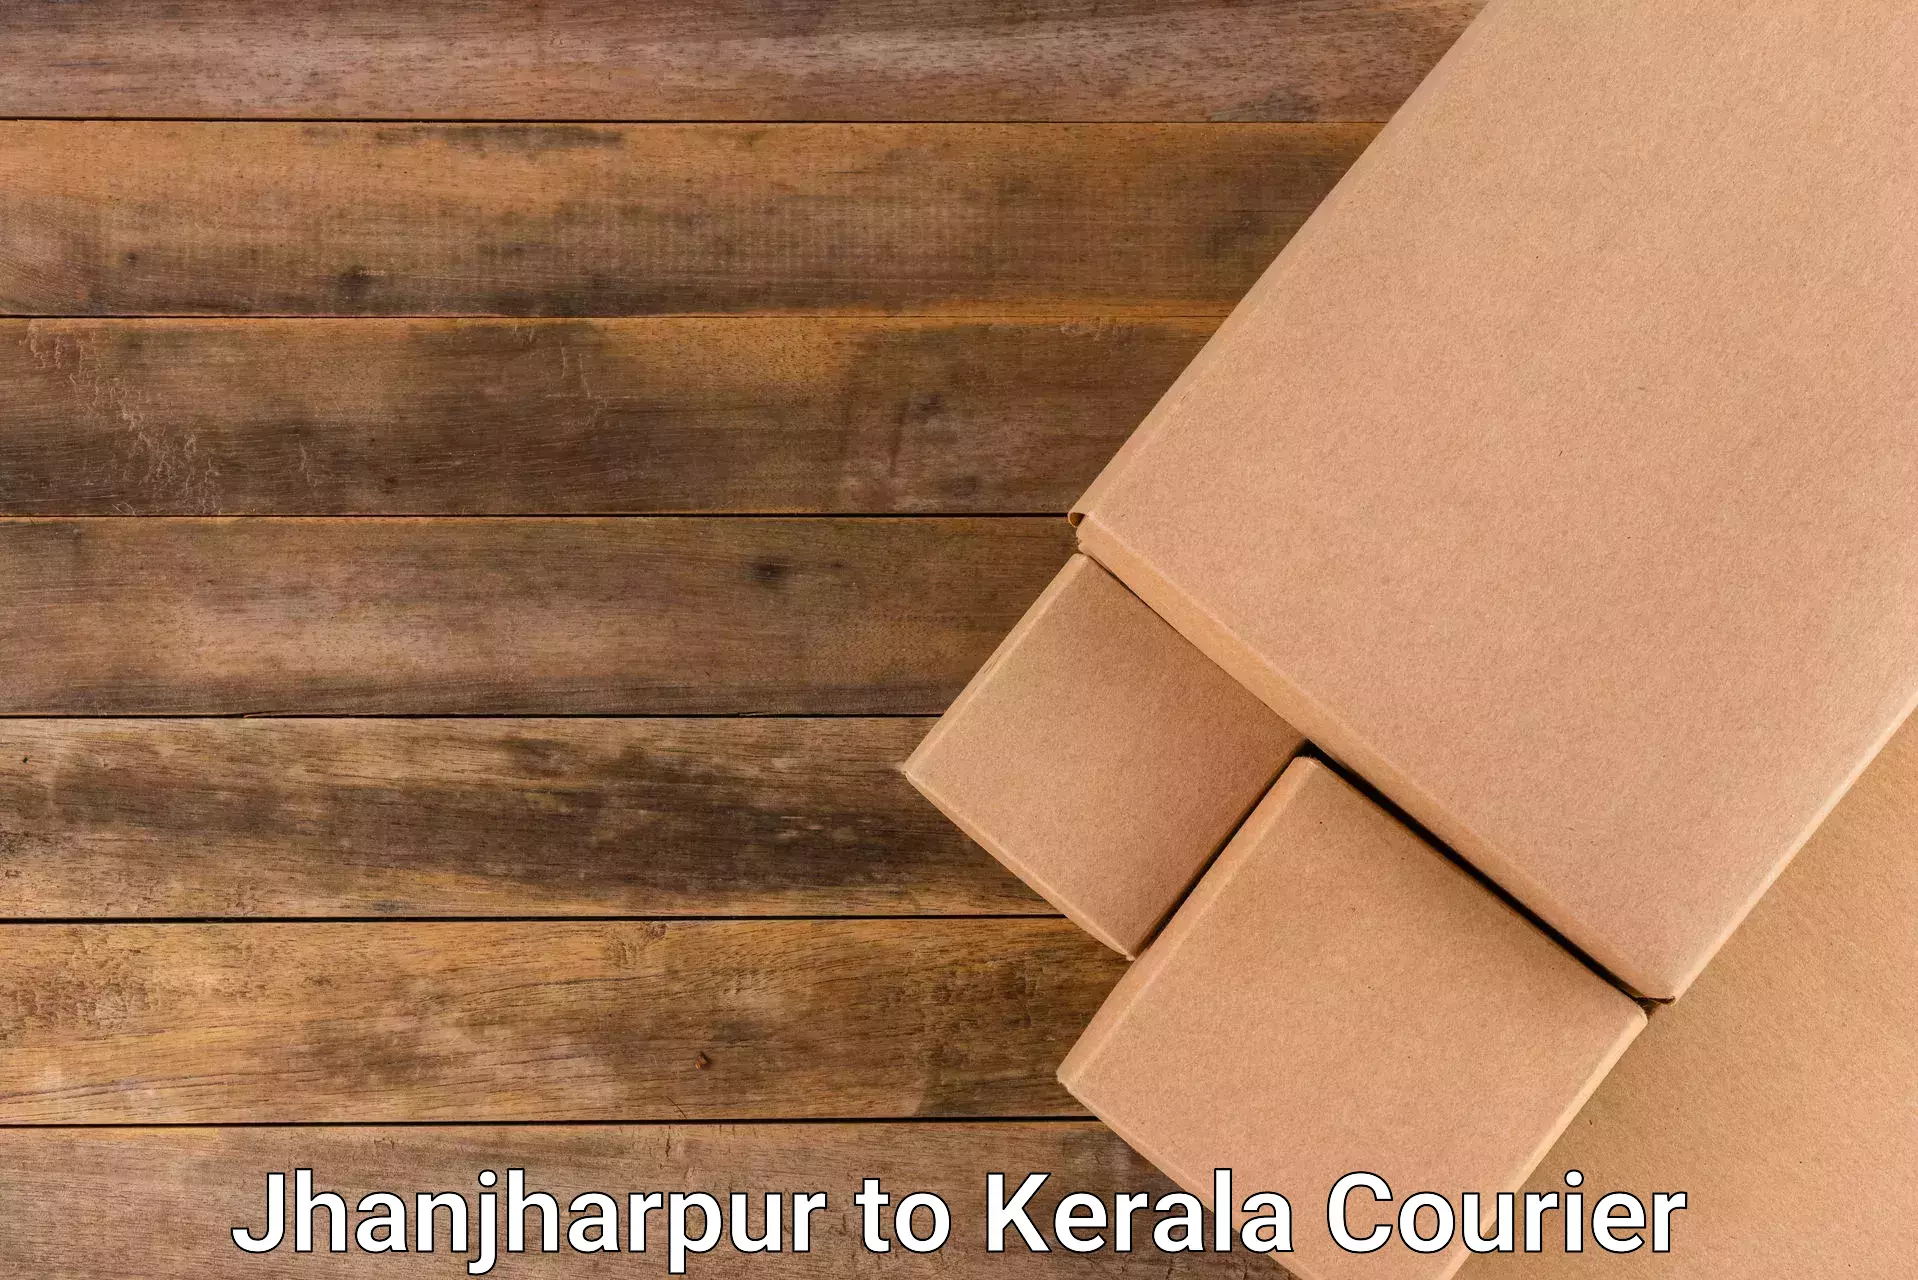 Flexible parcel services Jhanjharpur to Kuthiathode